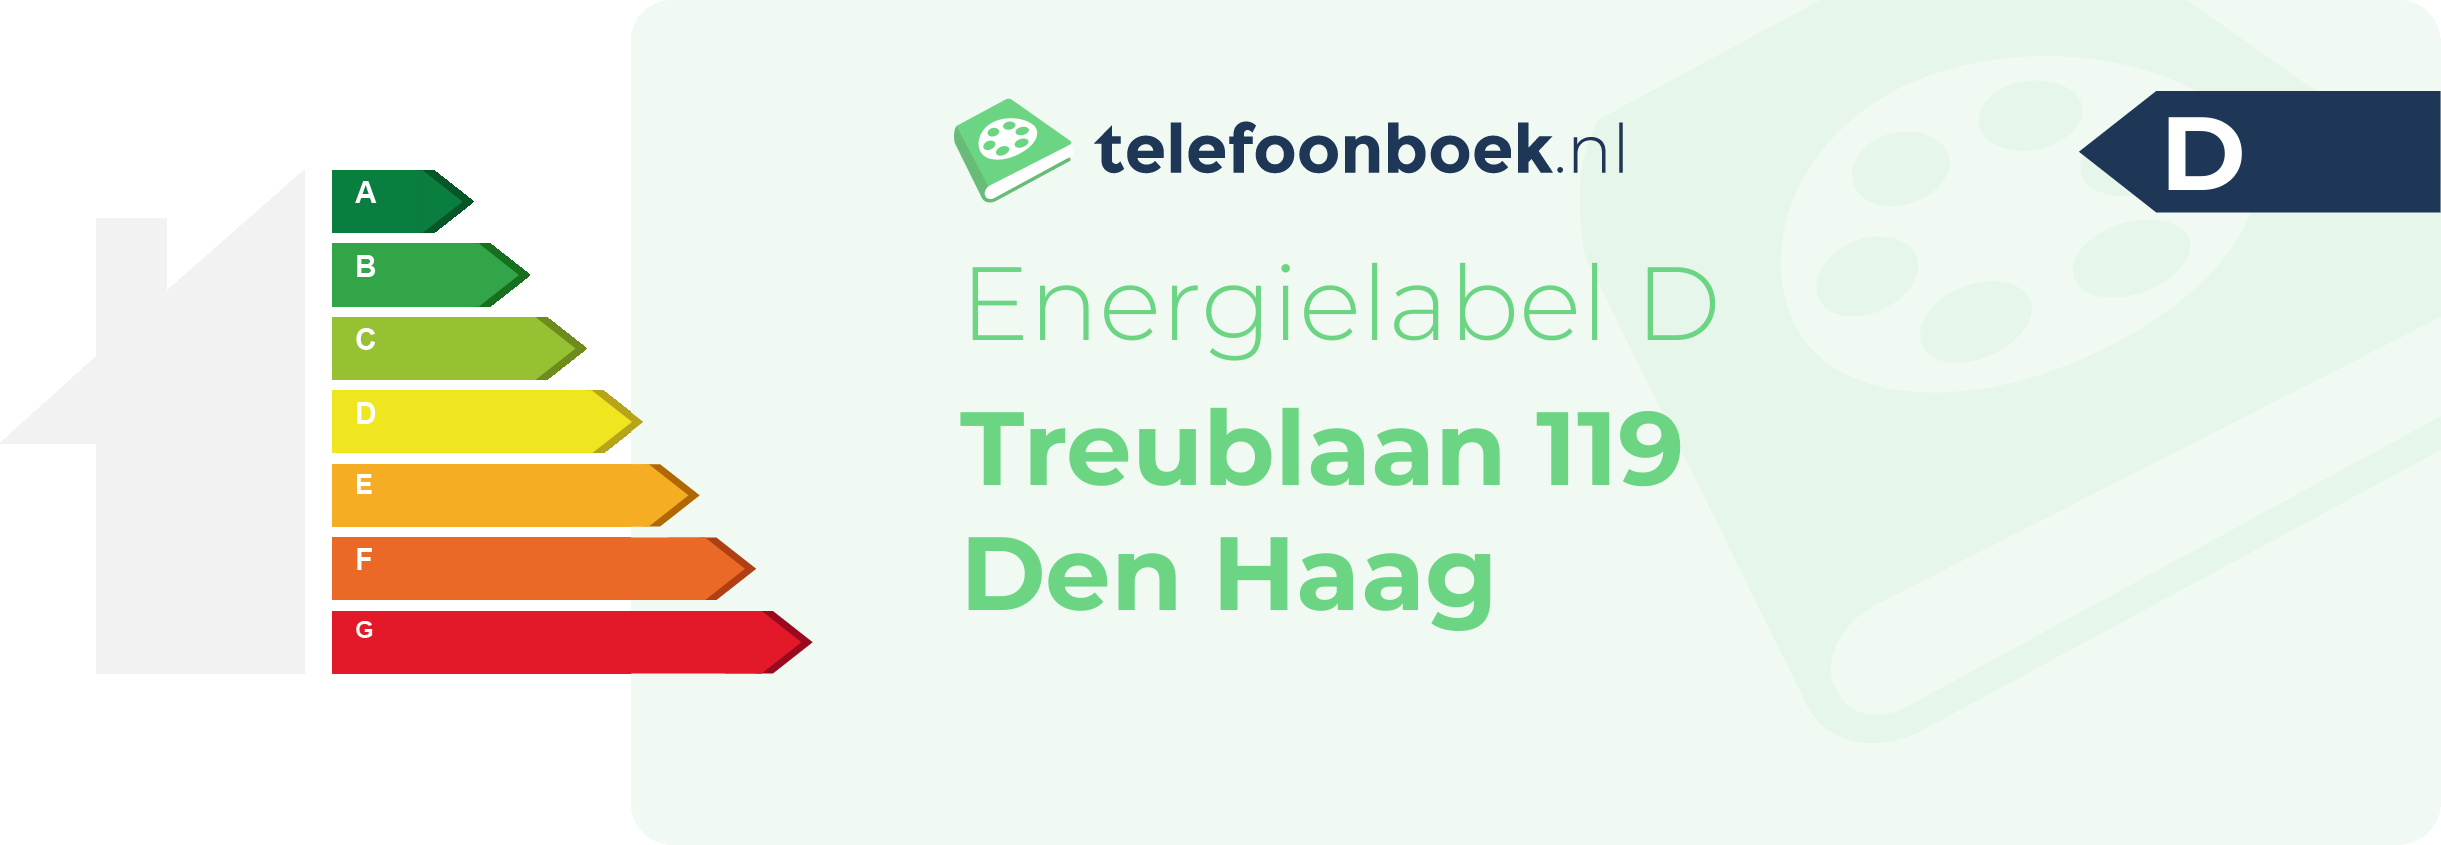 Energielabel Treublaan 119 Den Haag